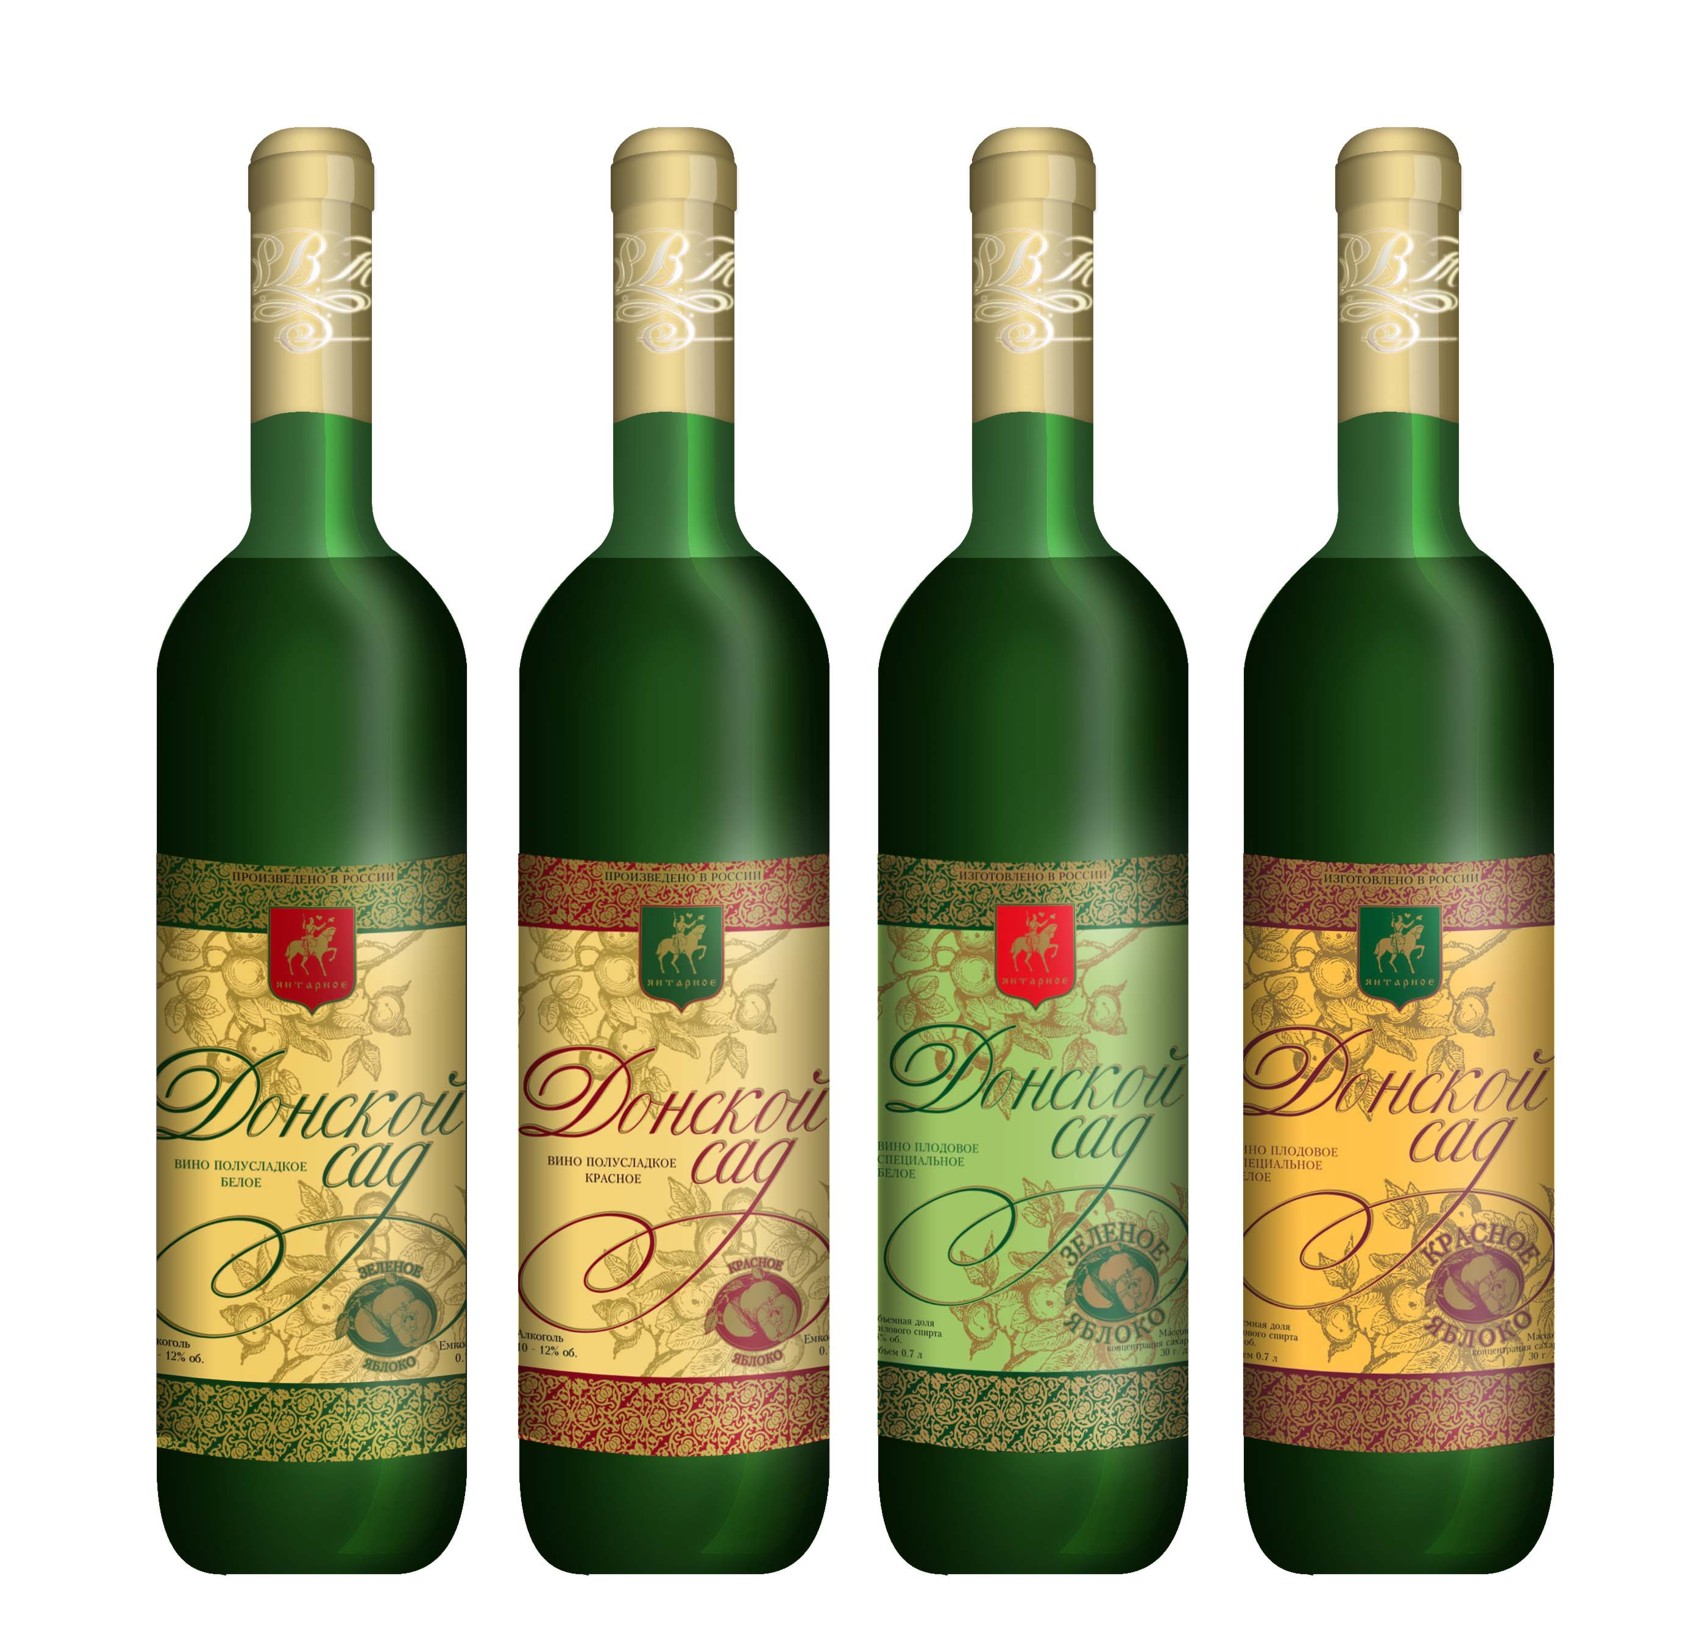 Вино полусладкое фруктовый. Донской сад вино. Плодовое вино. Вино в зеленой бутылке. Фруктовое плодовое вино.